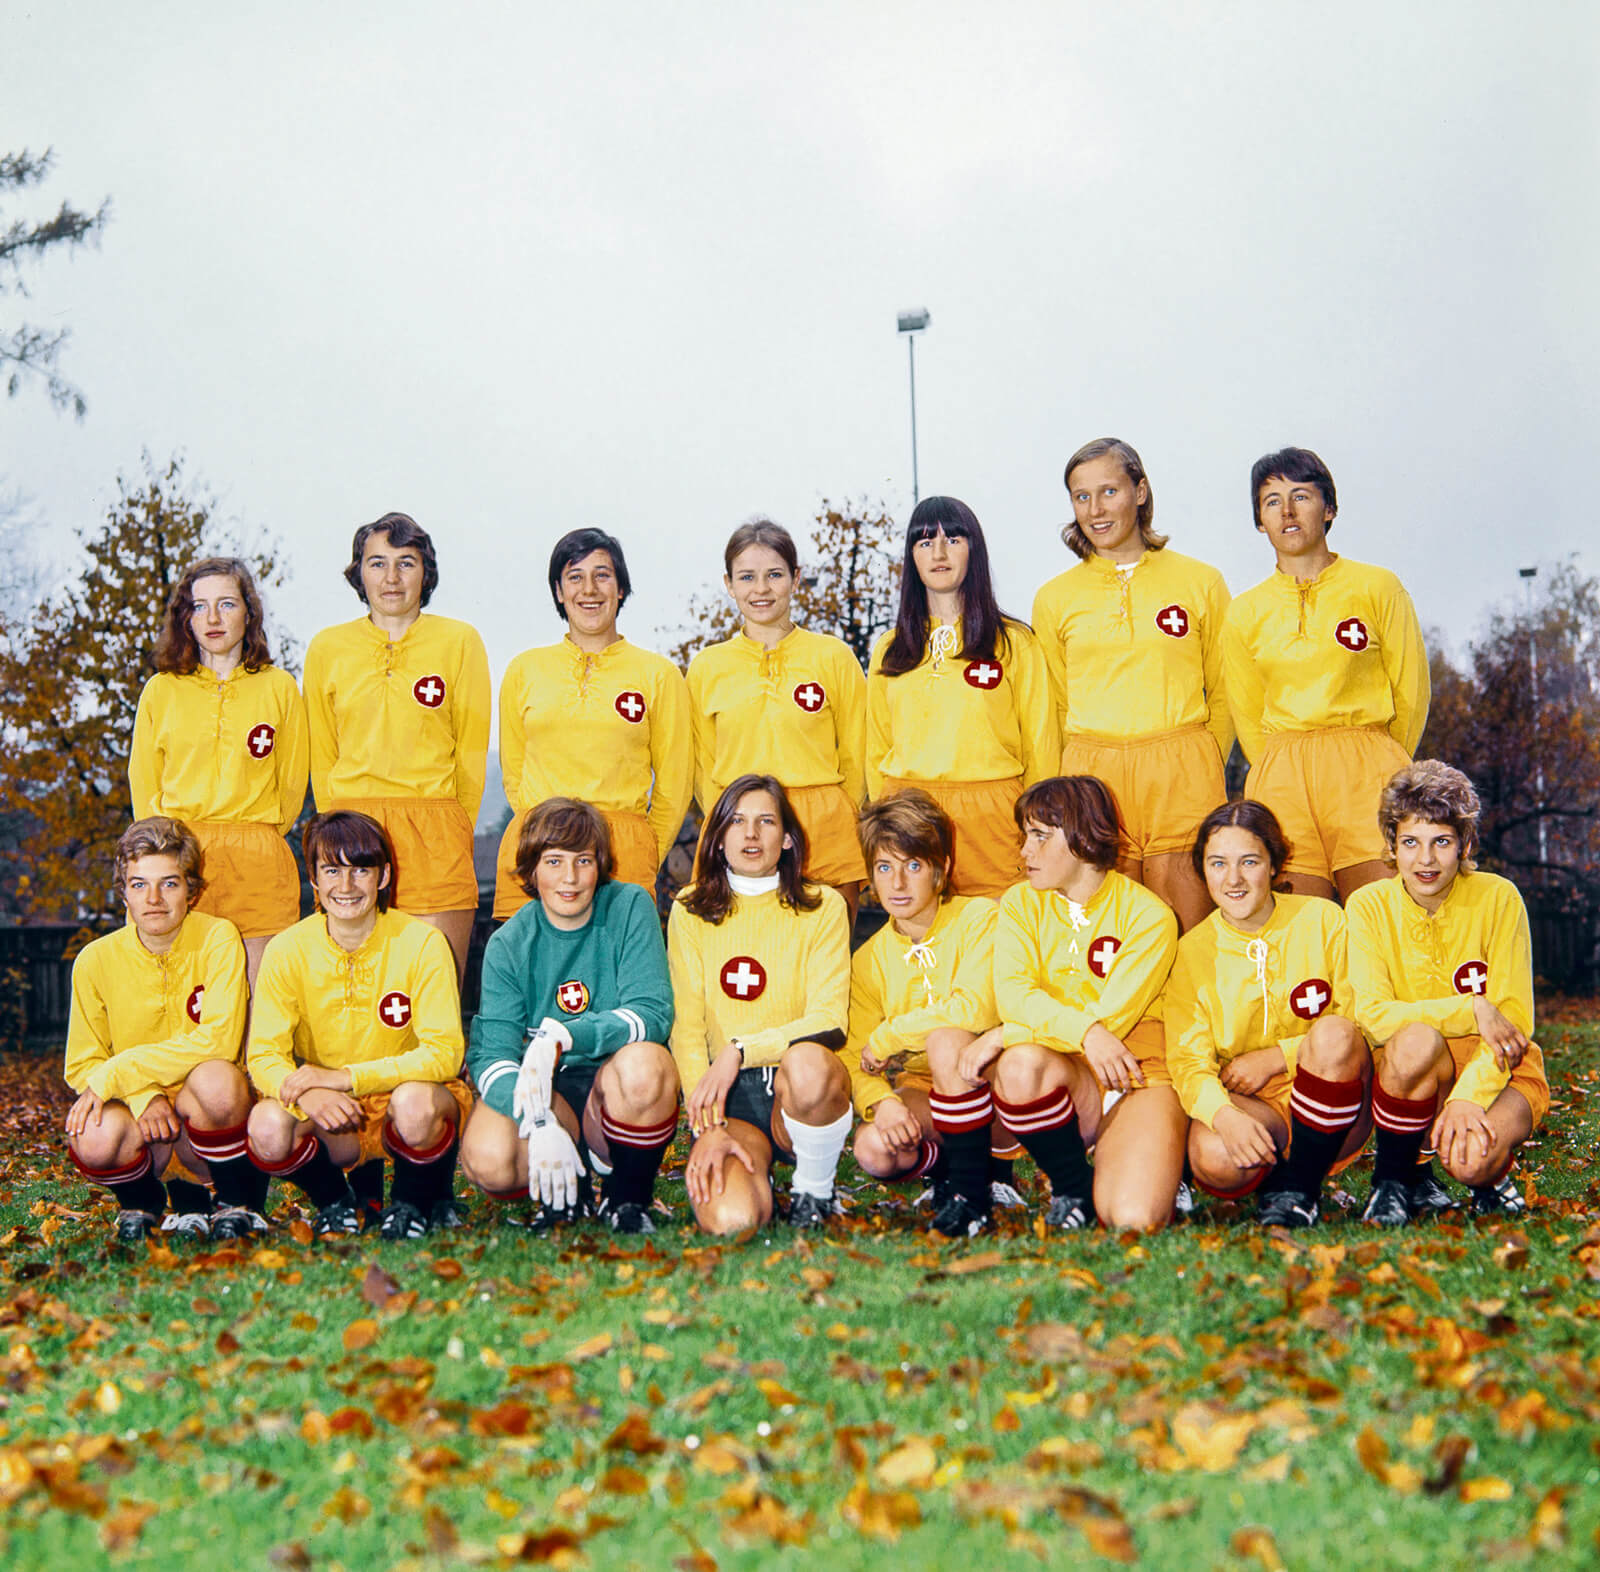 Swiss Women's Soccer Team Group Photograph 1970 (Photograph copyright Keystone/seit1968.ch)